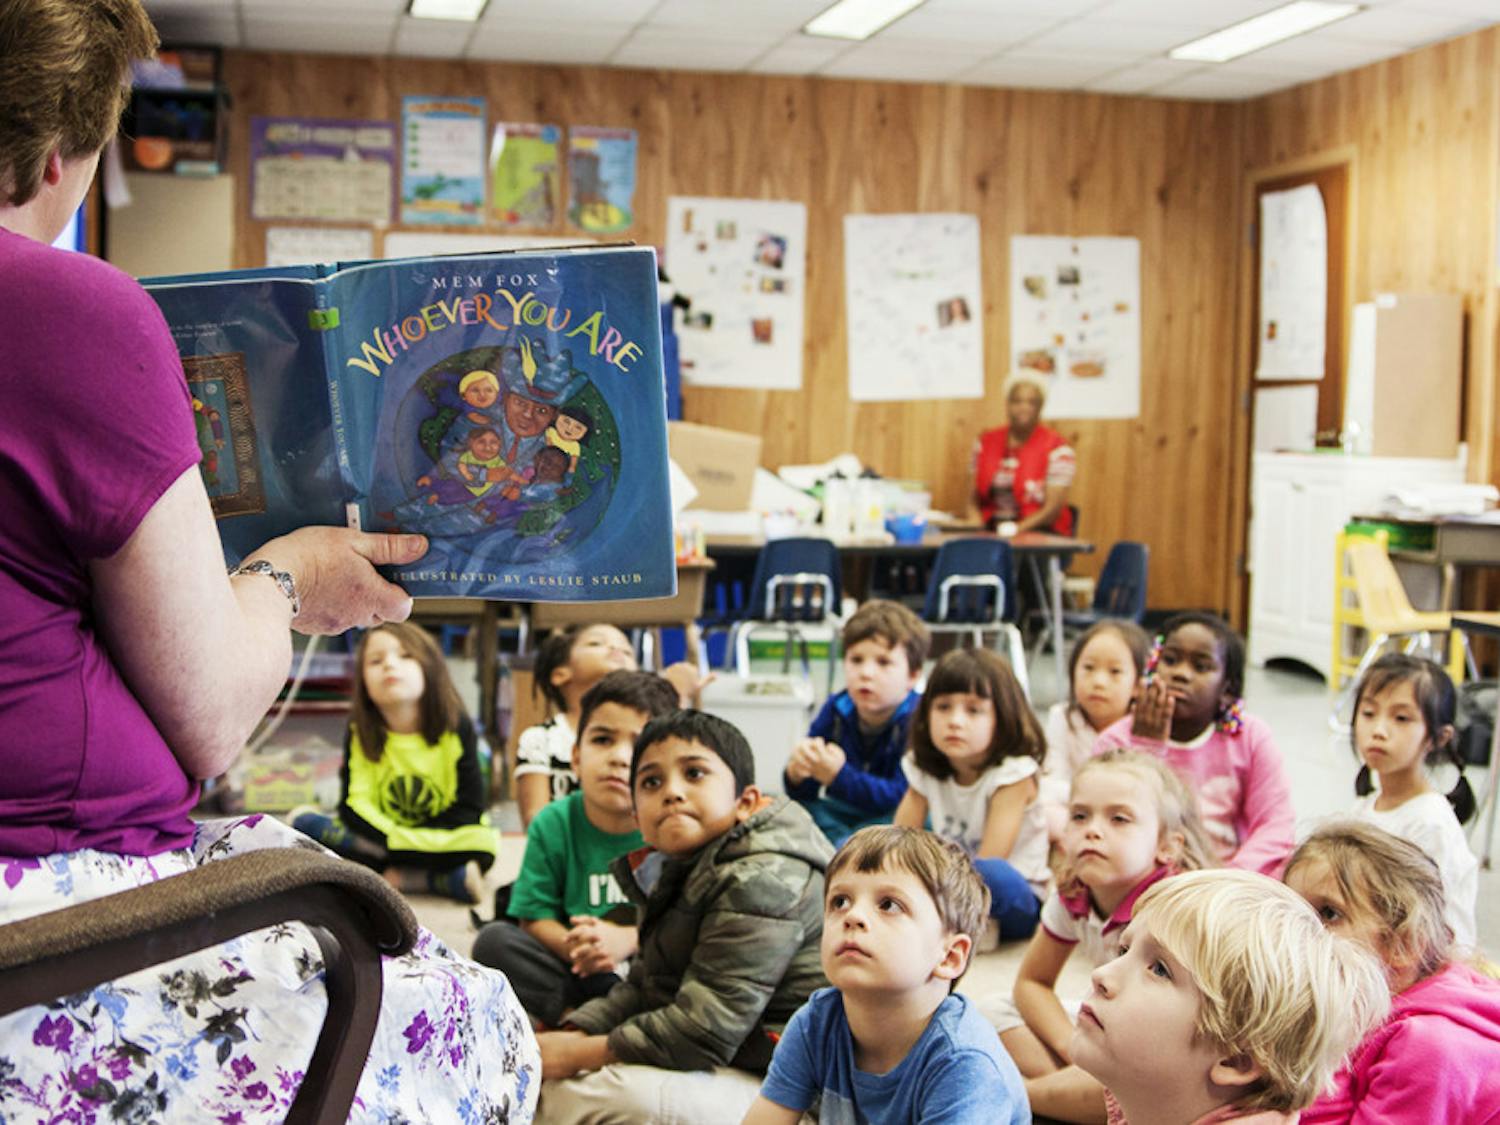  Karen Melvin, a kindergarten teacher at Littlewood Elementary School, reads “Whoever You Are” by Mem Fox to her kindergarten class. 